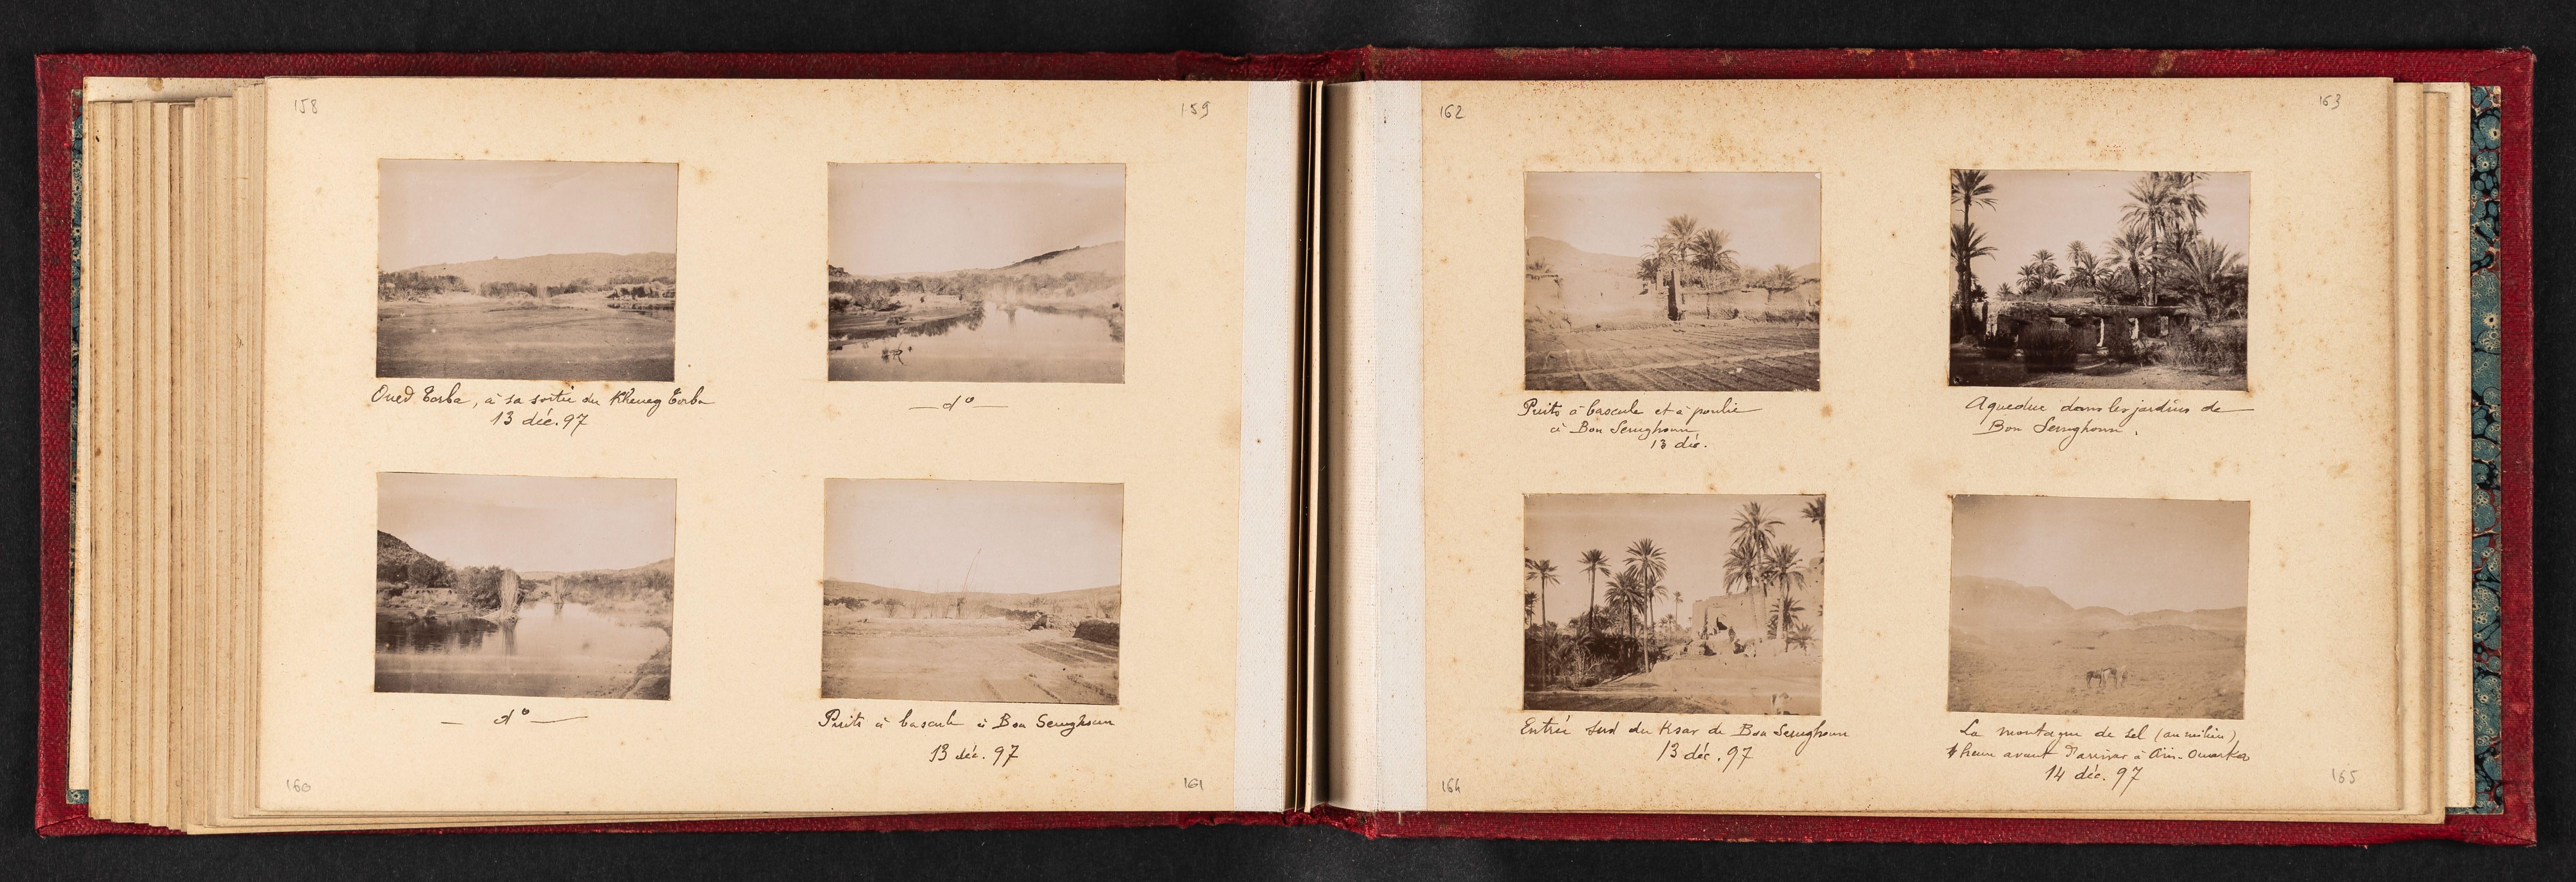 13 et 14 décembre 1897, environs de Bou Semghoum